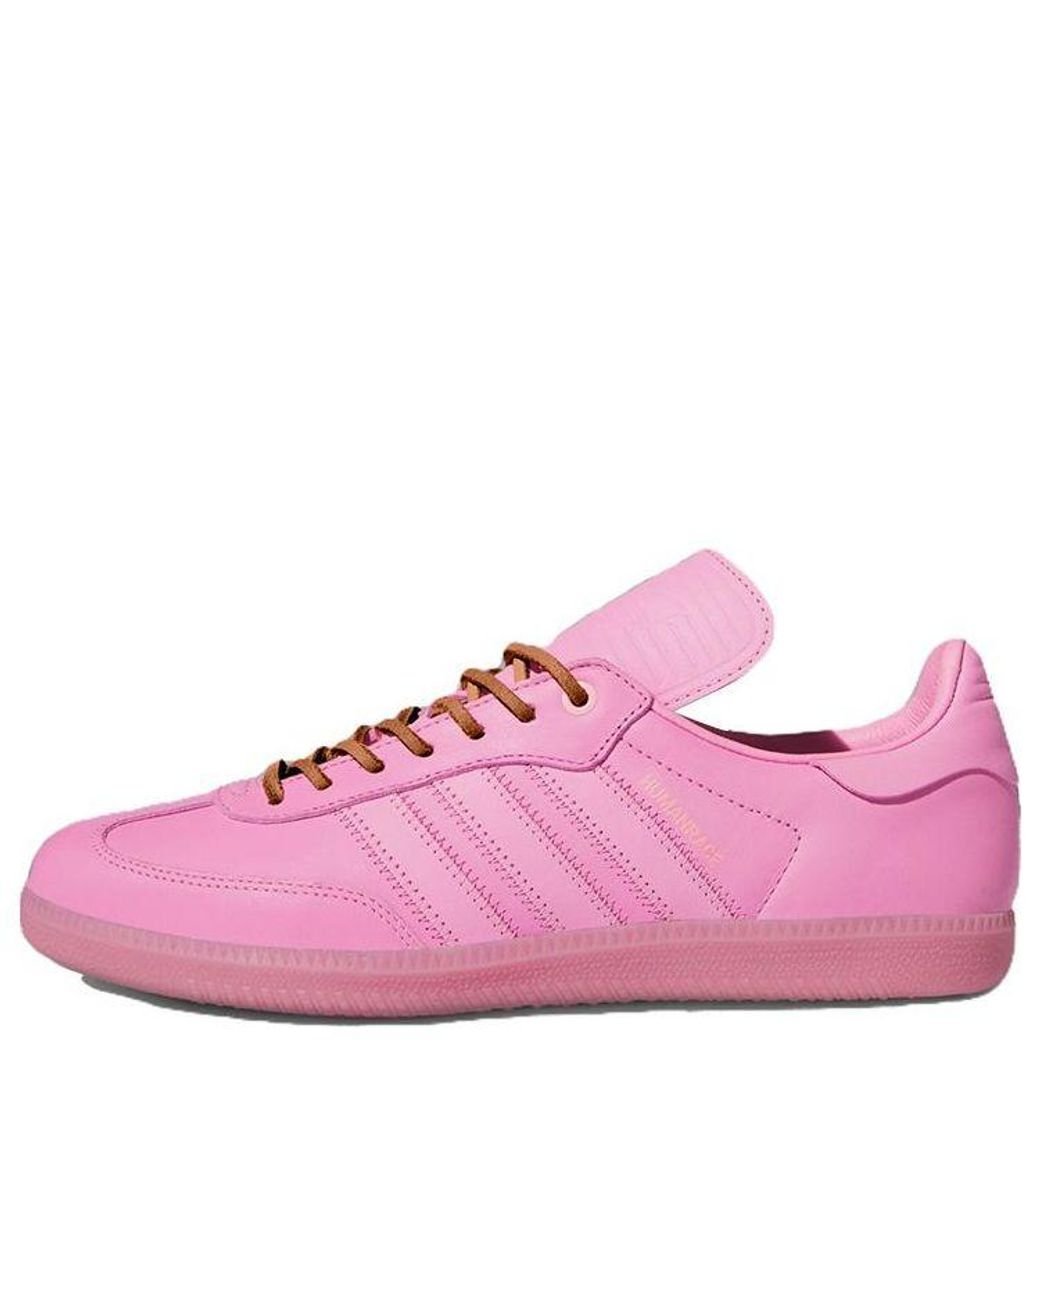 Adidas Samba Pharrell Humanrace Pink